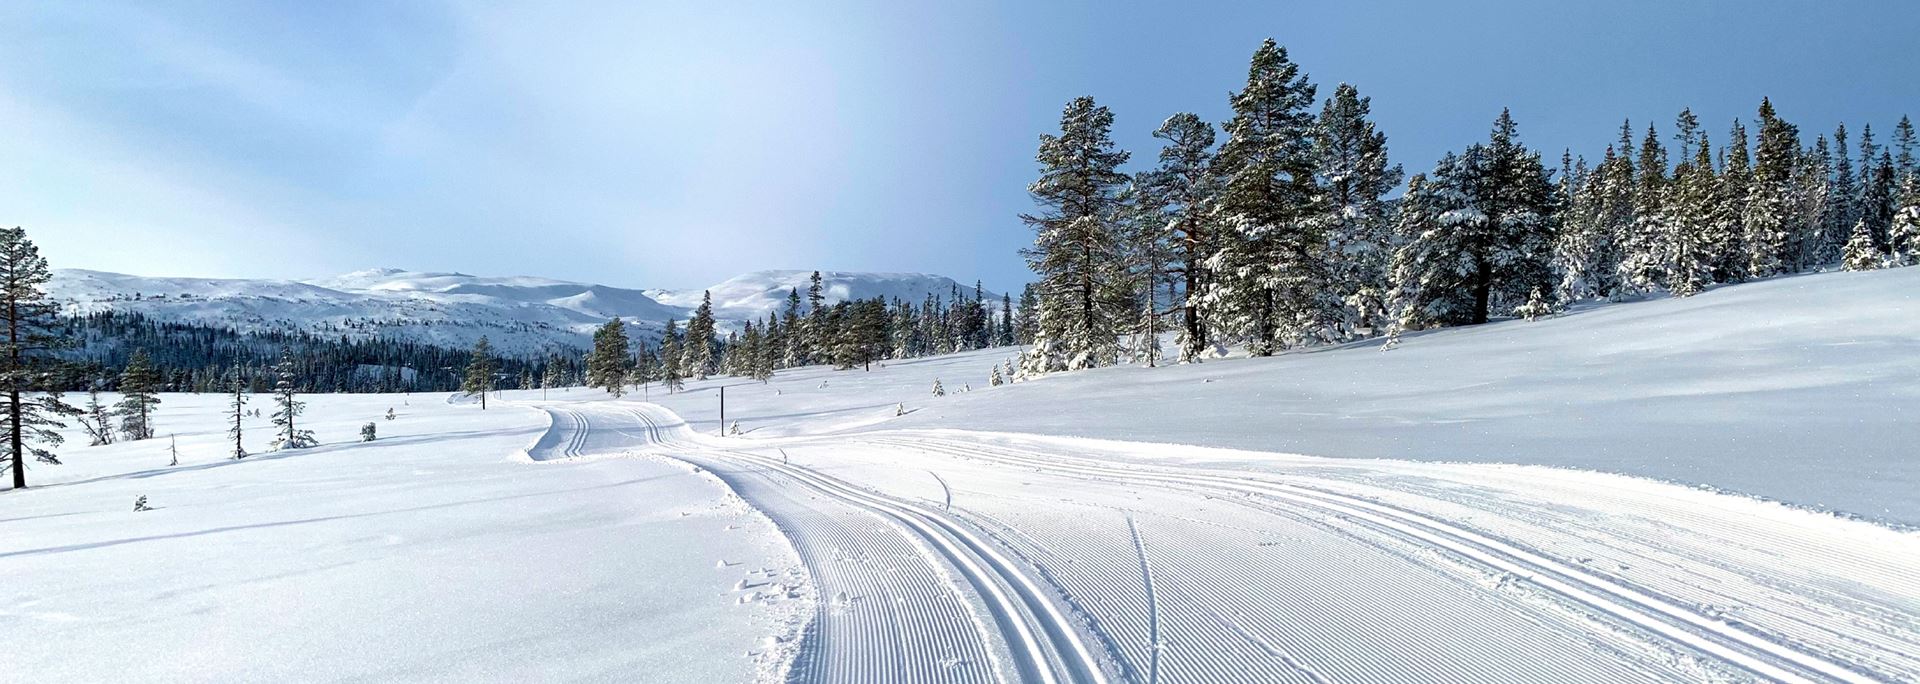 Nykjørte skiløyper omkranset av snødekte trær og blå himmel